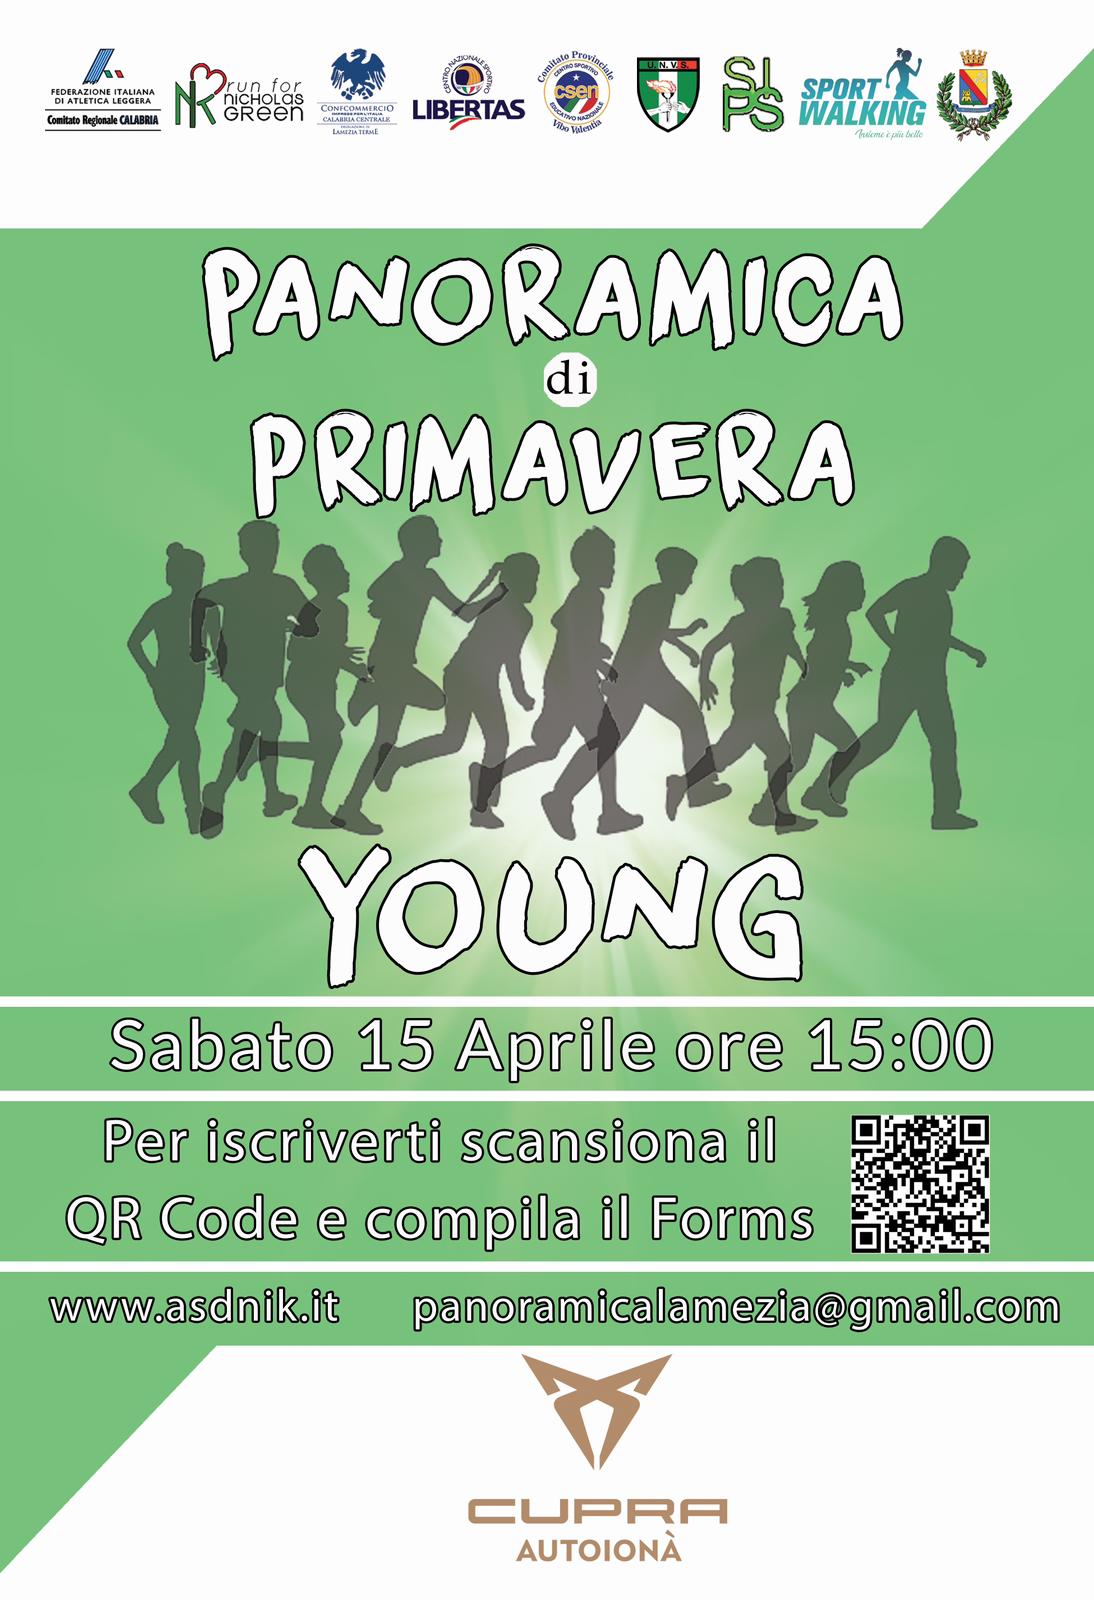 PANORAMICA YOUNG